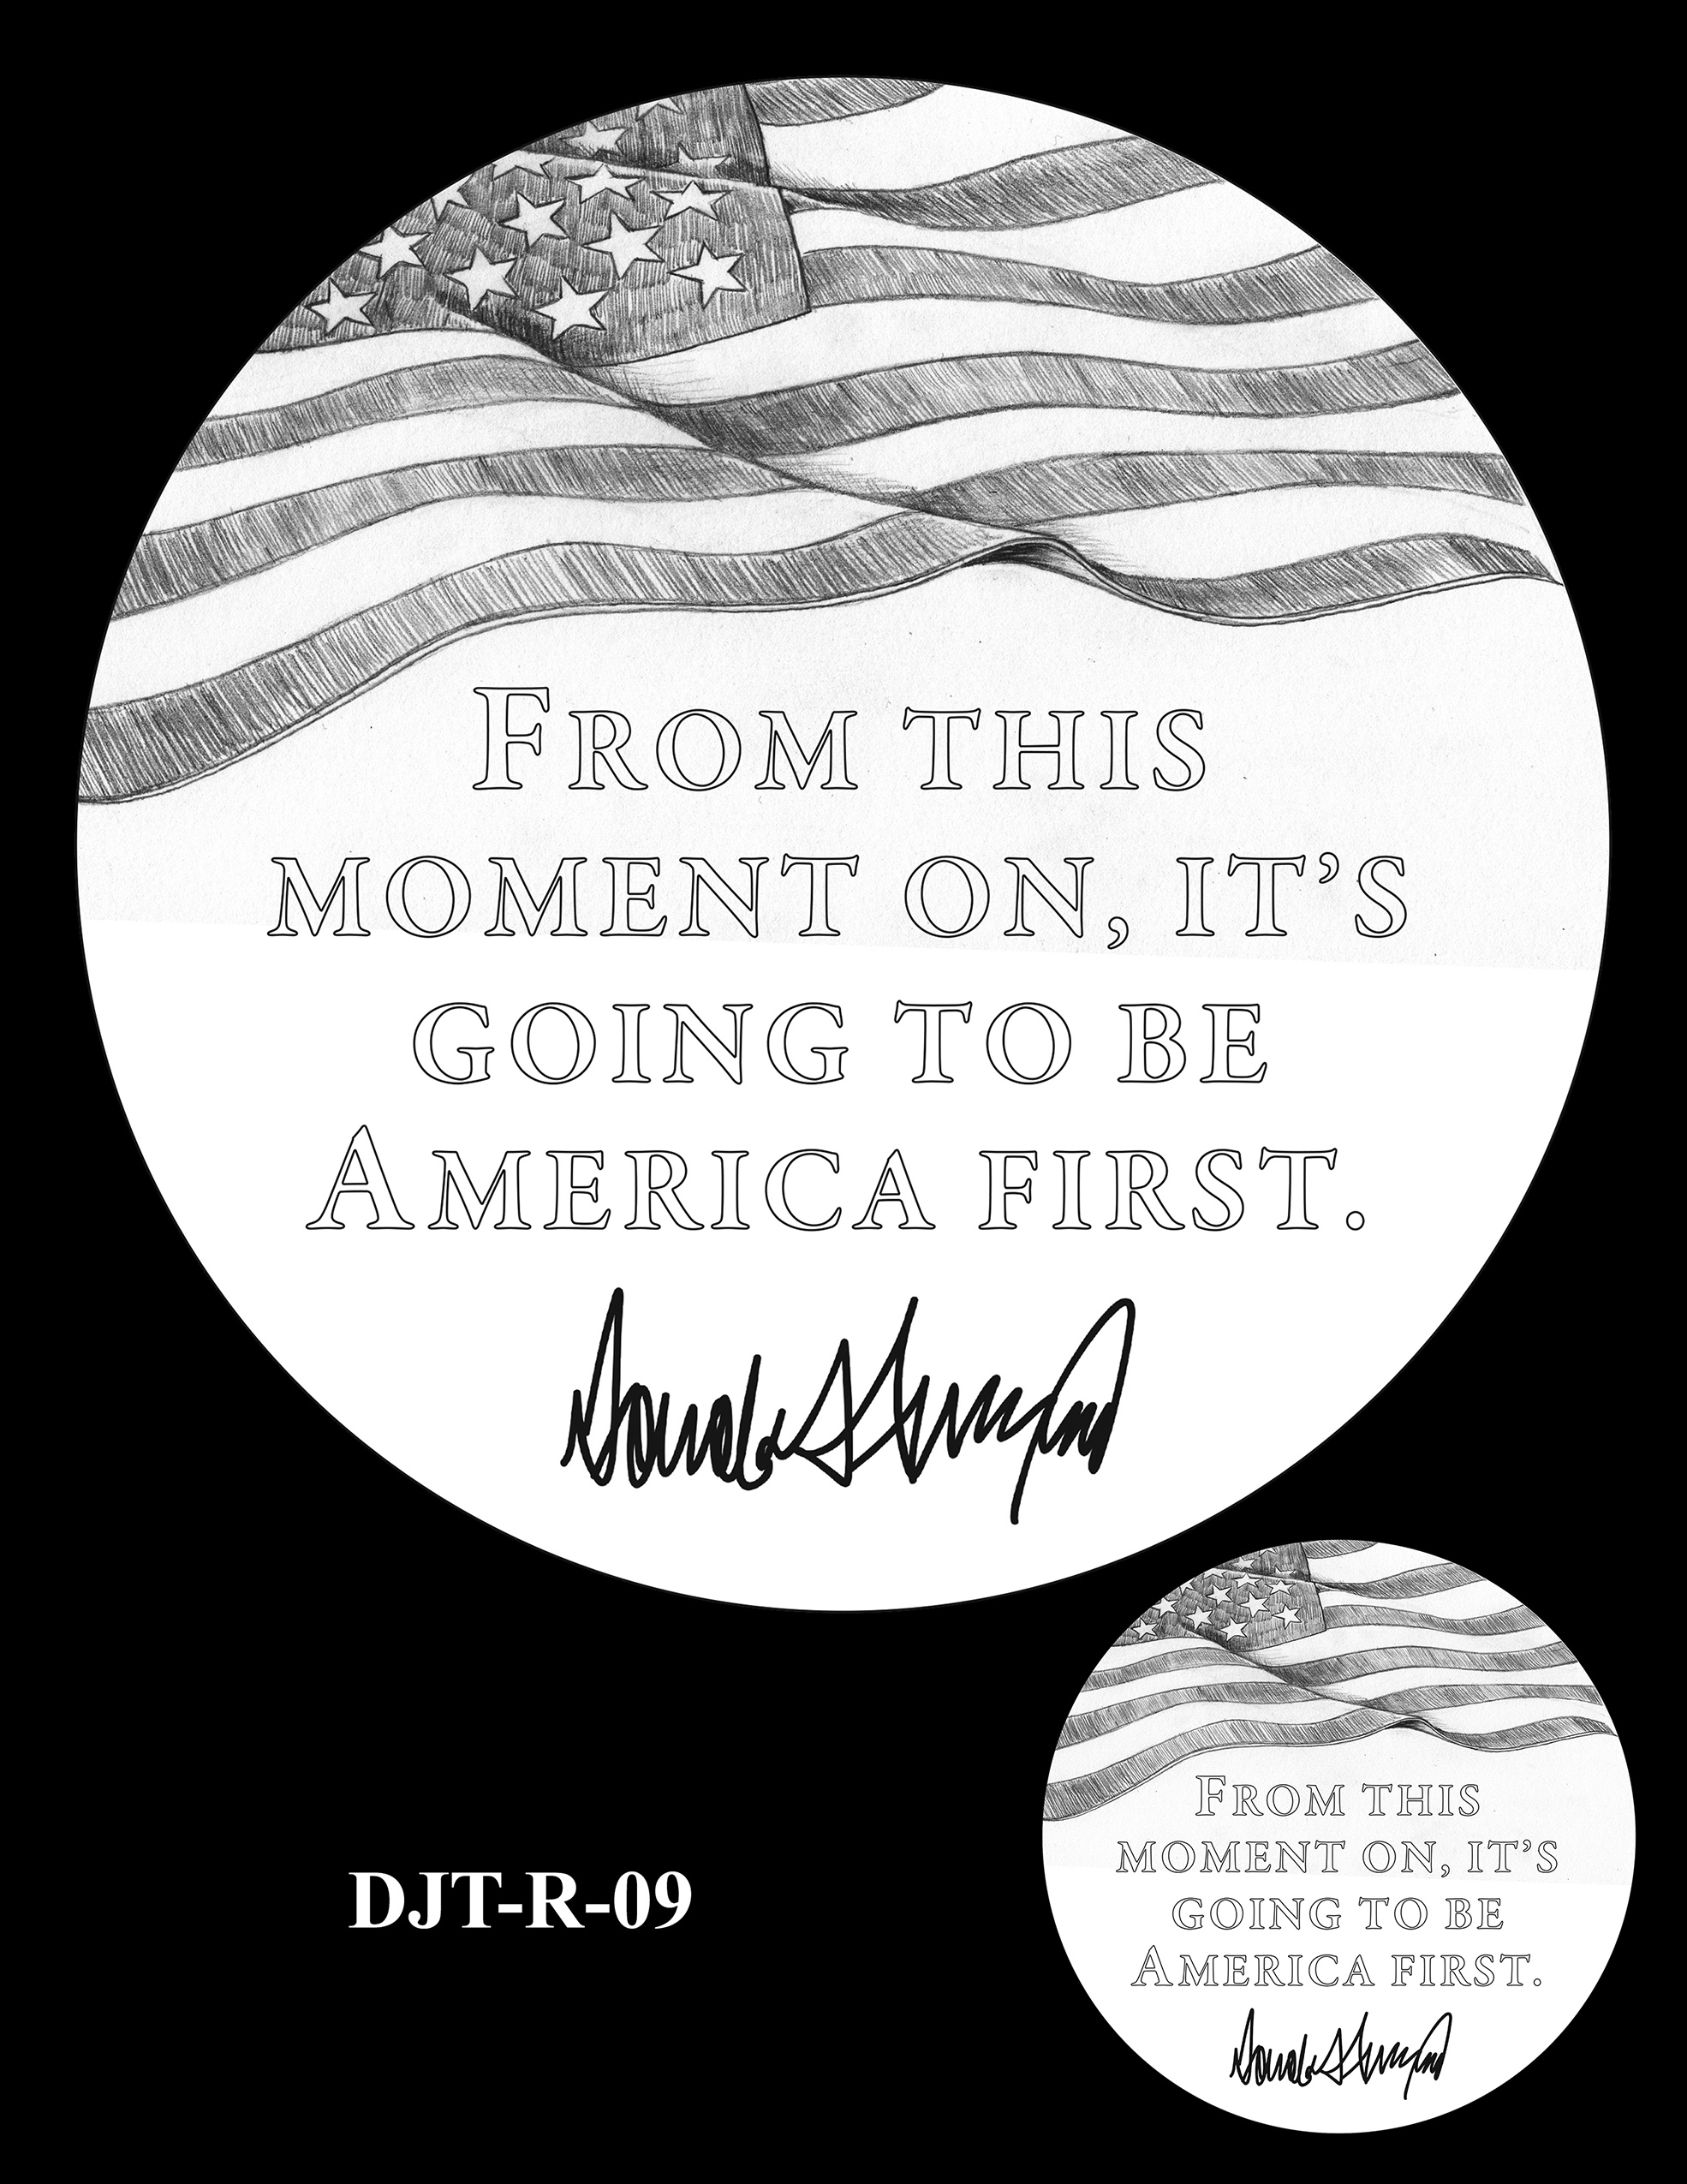 DJT-R-09 -- Donald J. Trump Presidential Medal